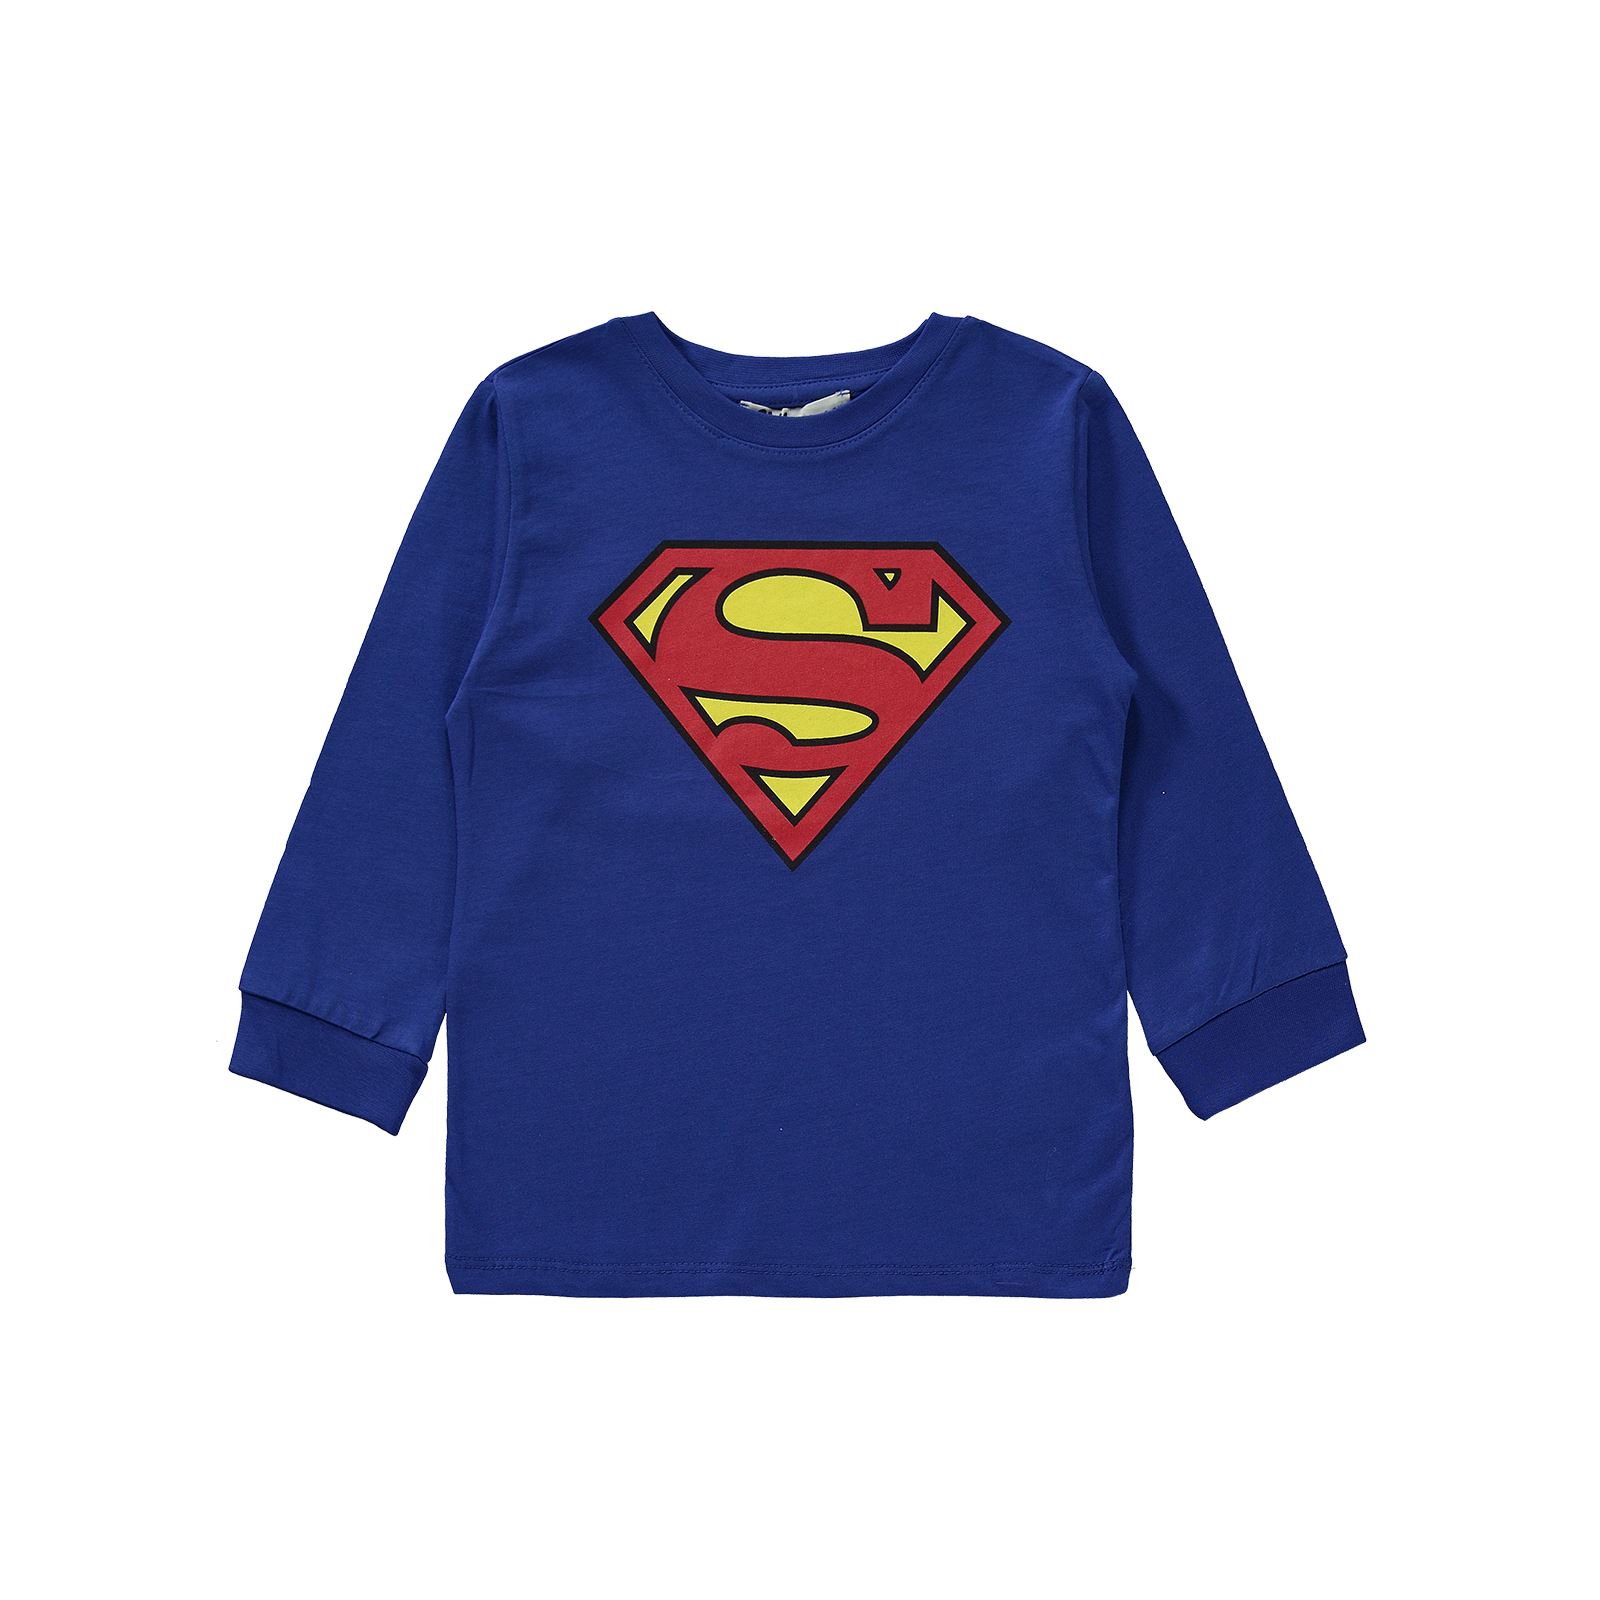 Superman Erkek Çocuk Pijama Takımı 2-5 Yaş Saks Mavisi